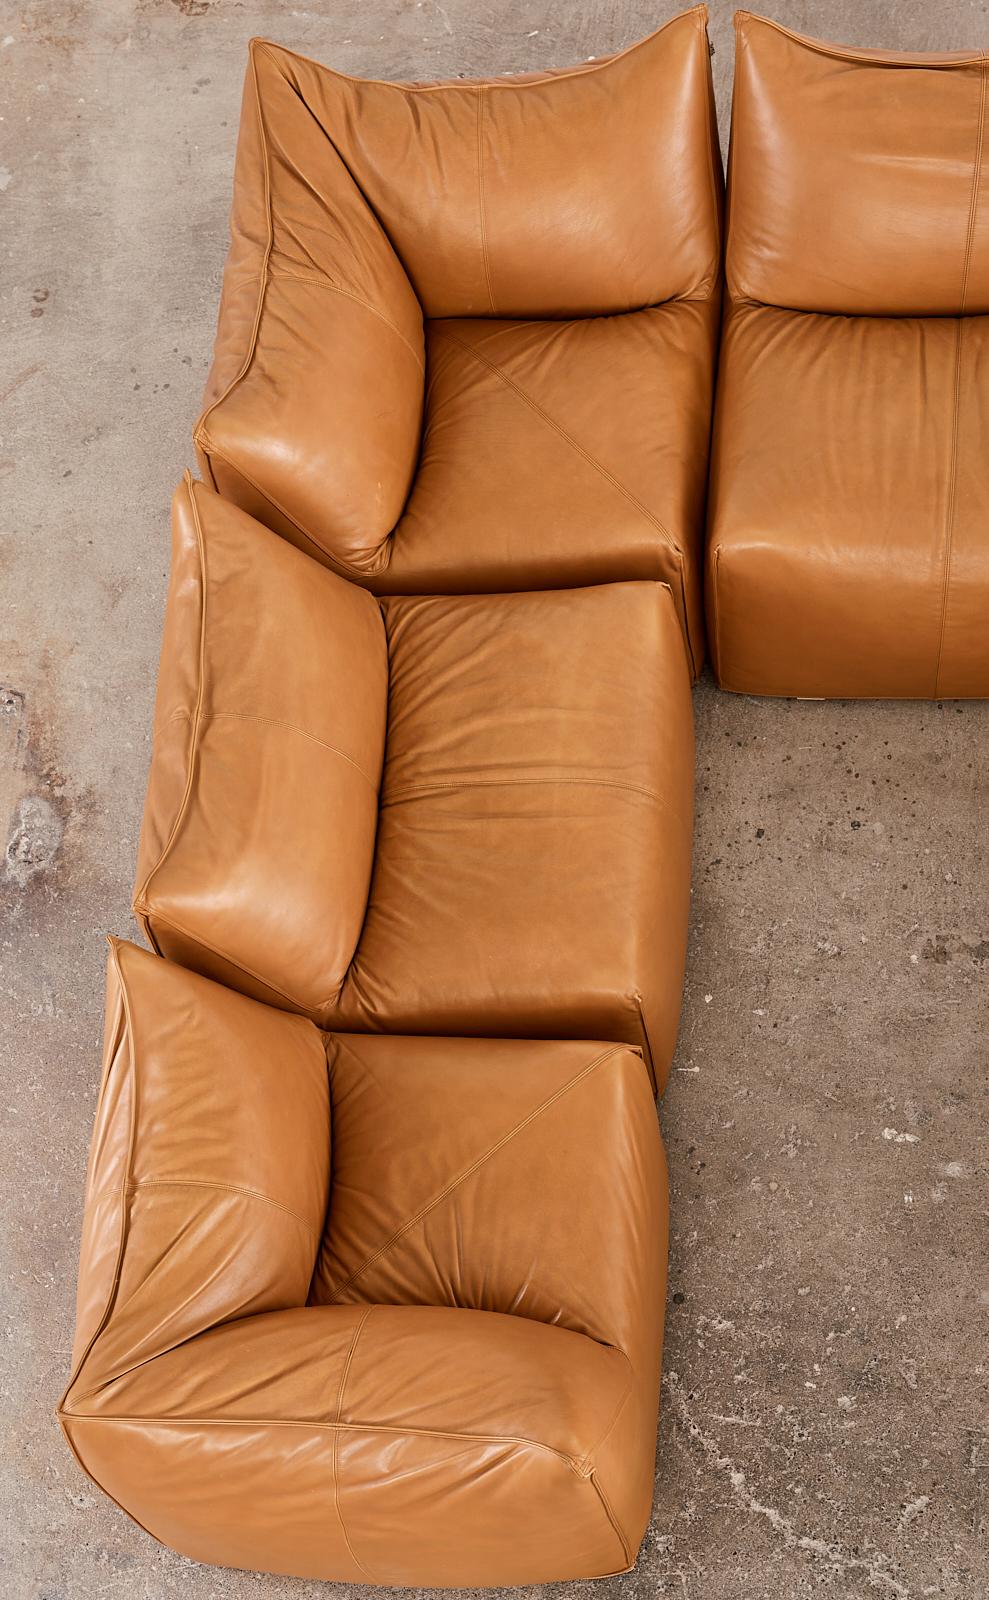 Bambole Leather Sectional Sofa by Mario Bellini for B + B Italia 2